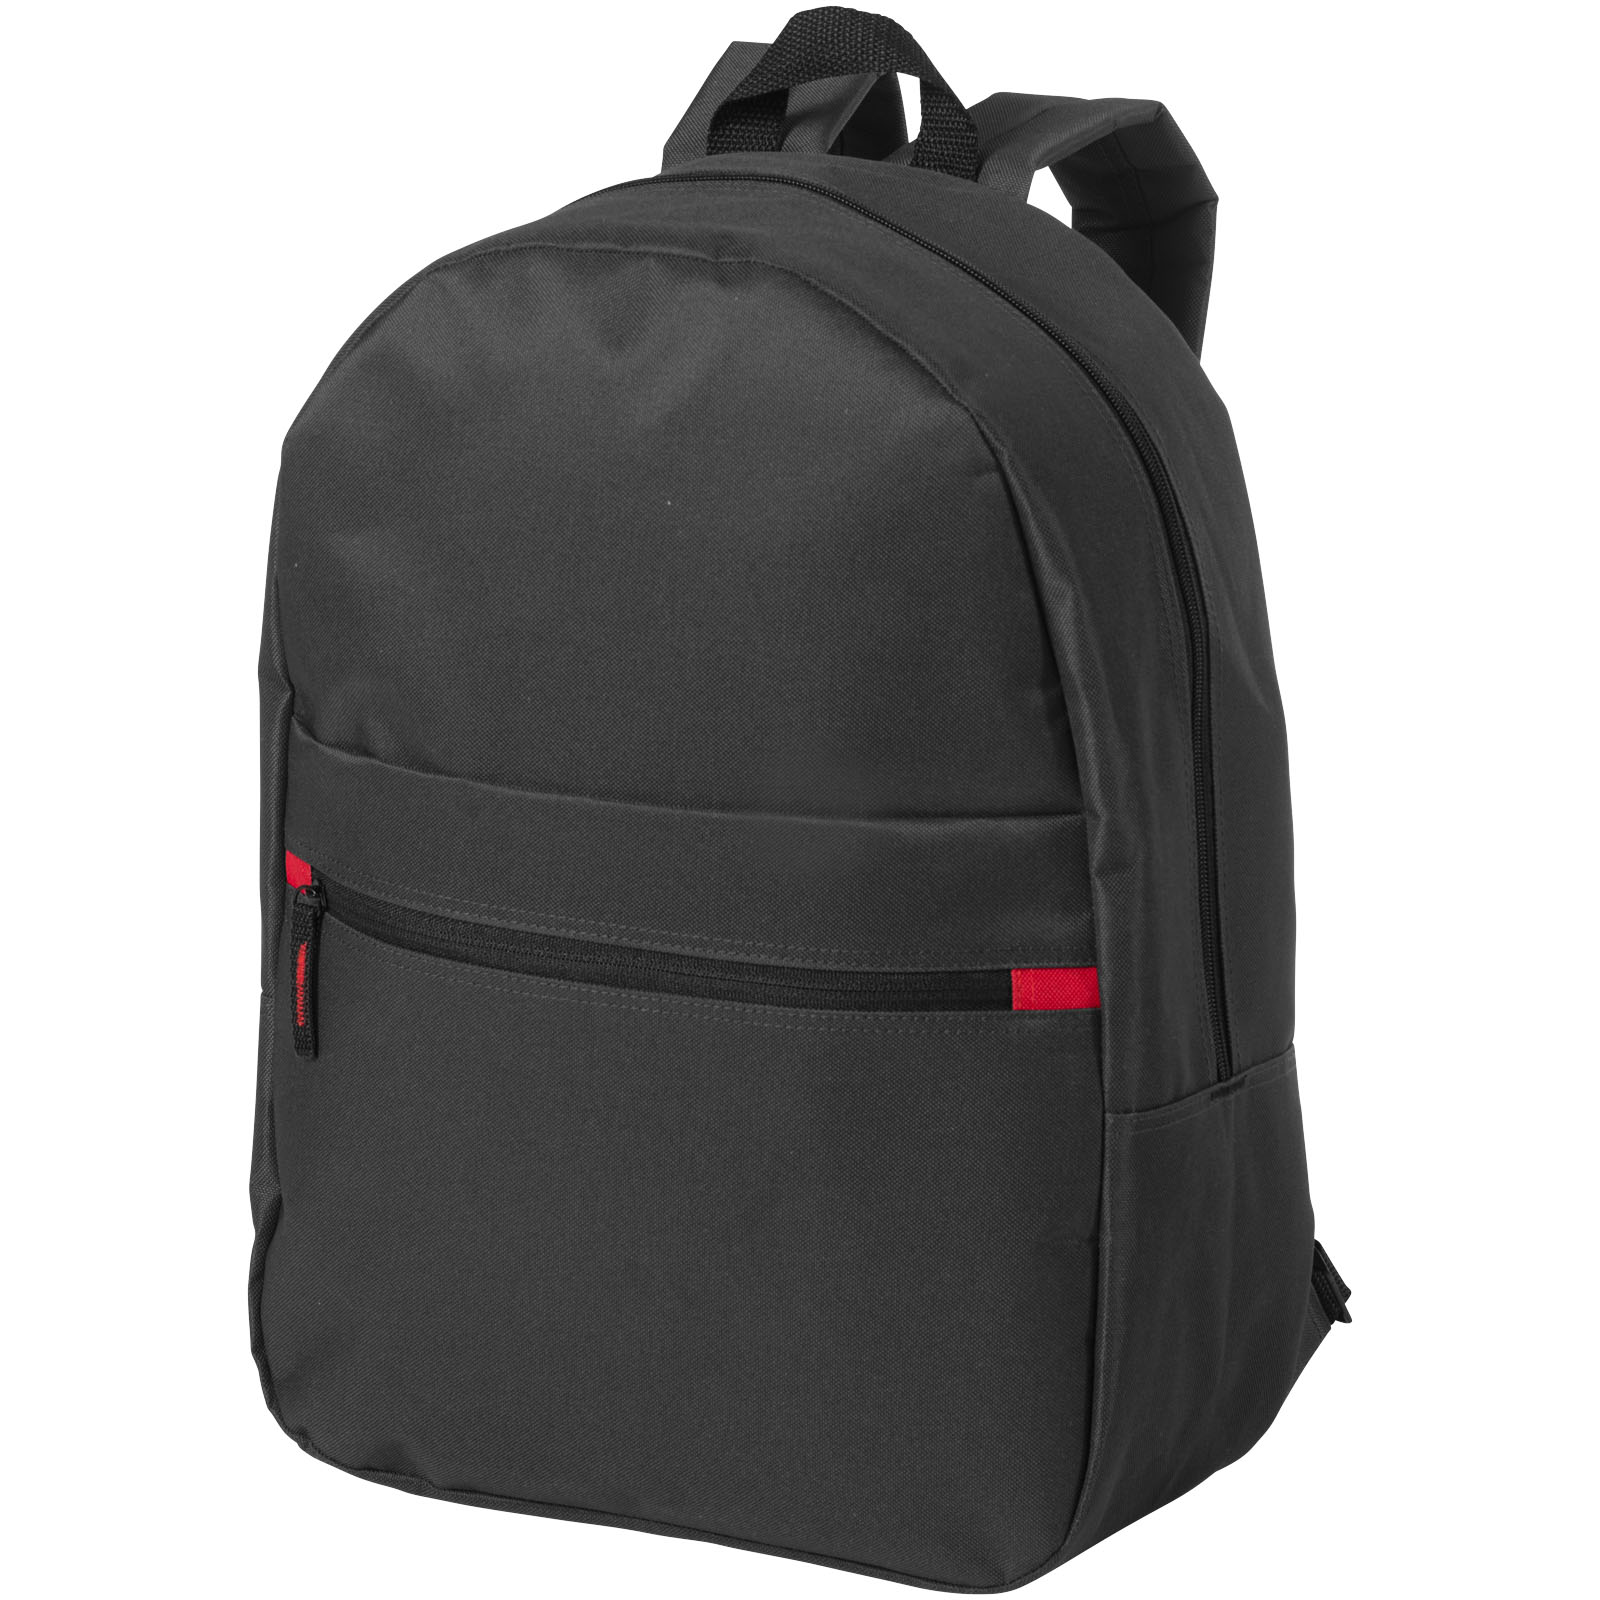 Backpacks - Vancouver backpack 23L